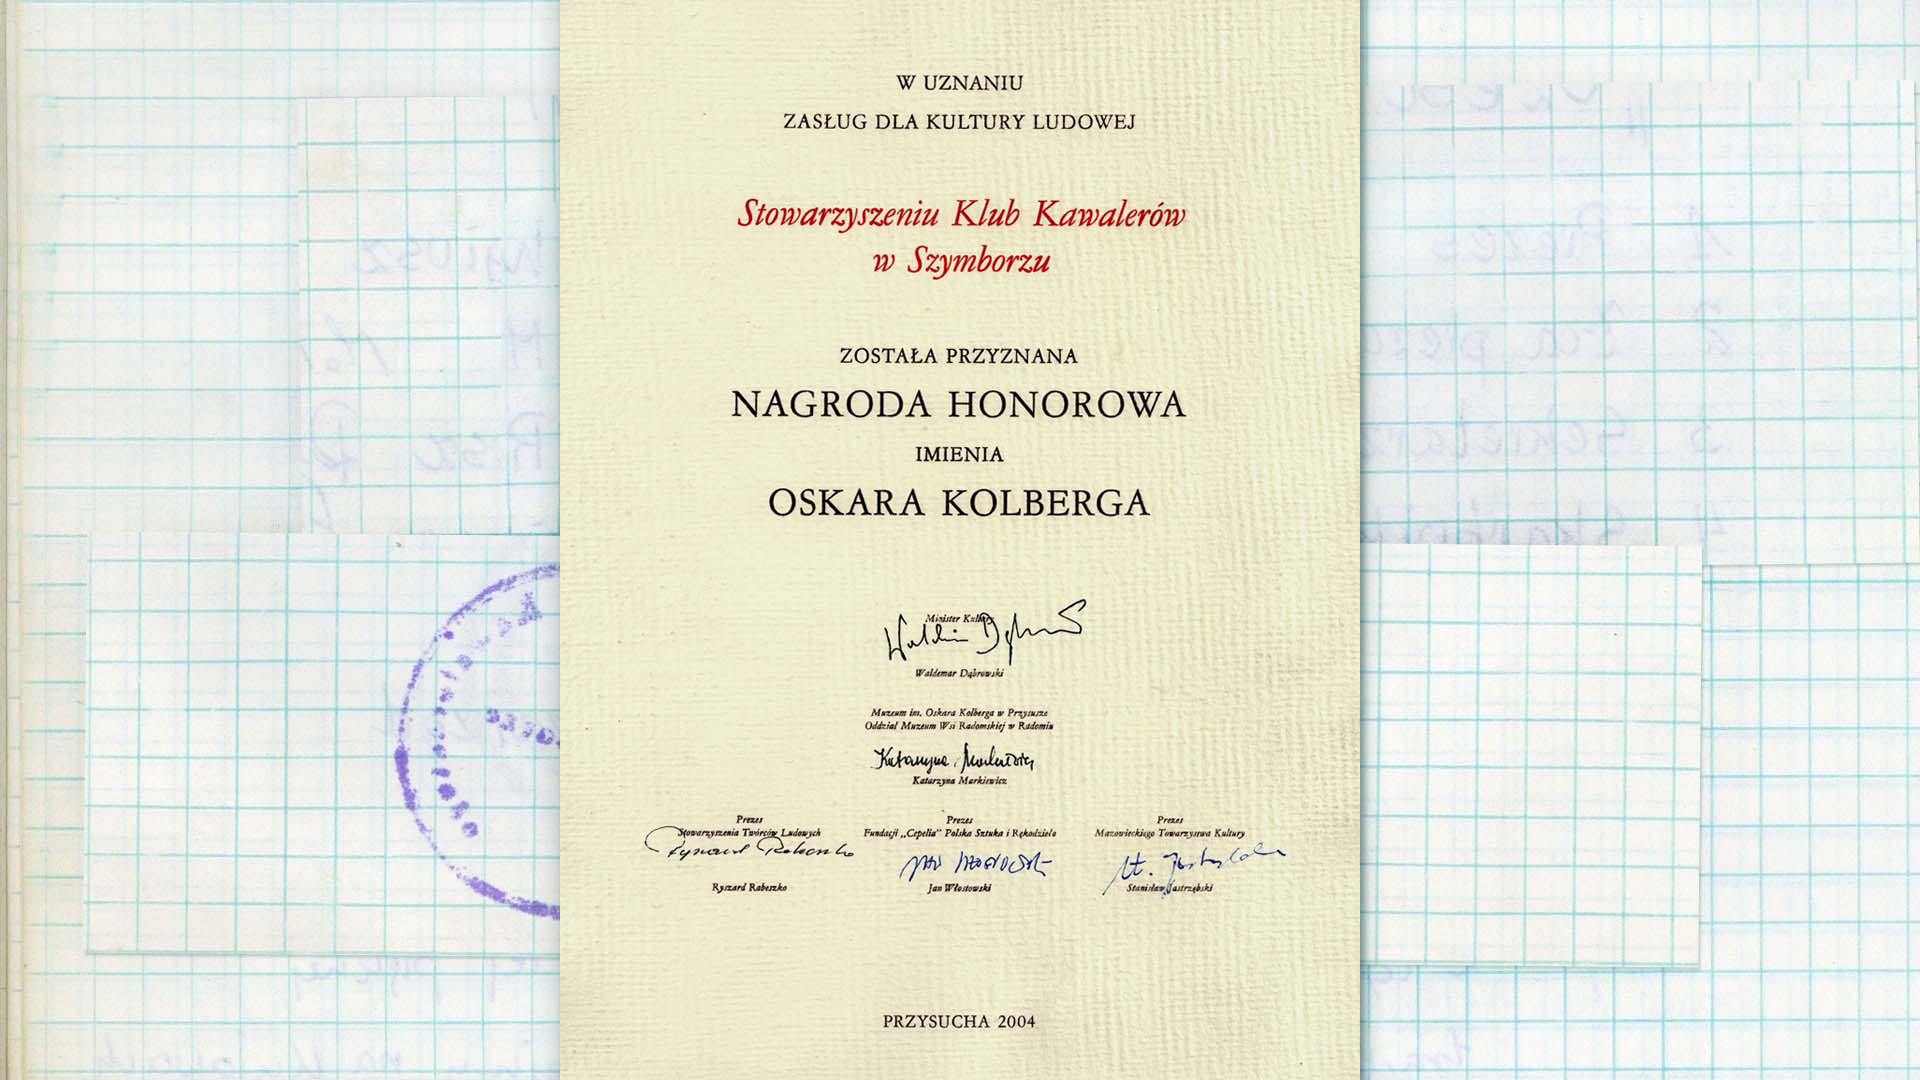 Kolorowy skan. Dyplom potwierdzający przyznanie nagrody honorowej imienia Oskara Kolberga Stowarzyszeniu Klubu Kawalerów w Szymborzu.